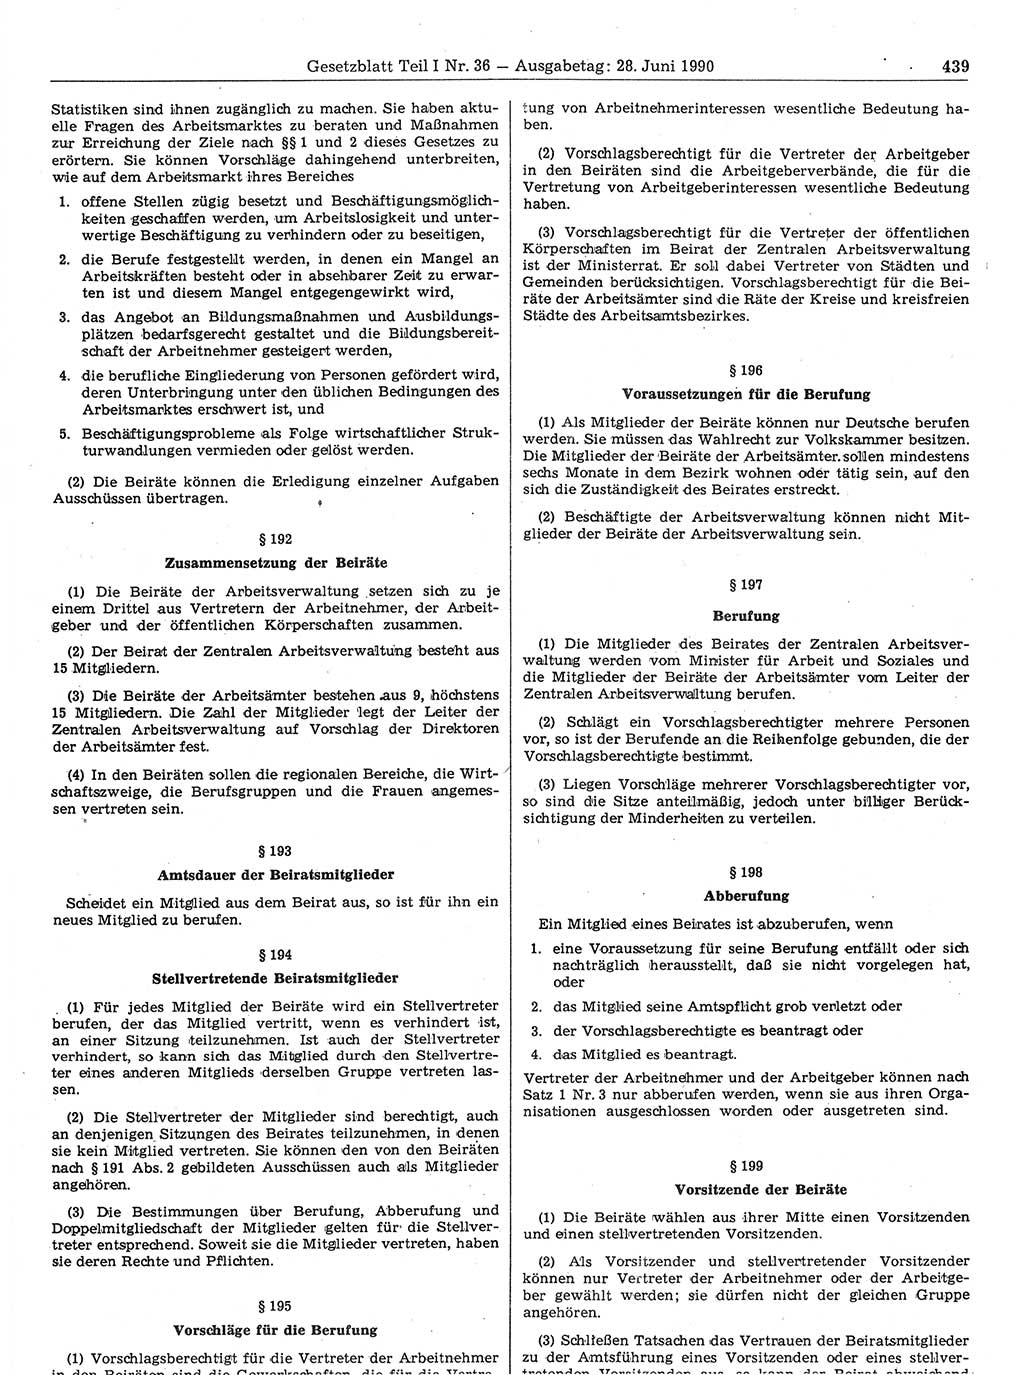 Gesetzblatt (GBl.) der Deutschen Demokratischen Republik (DDR) Teil Ⅰ 1990, Seite 439 (GBl. DDR Ⅰ 1990, S. 439)